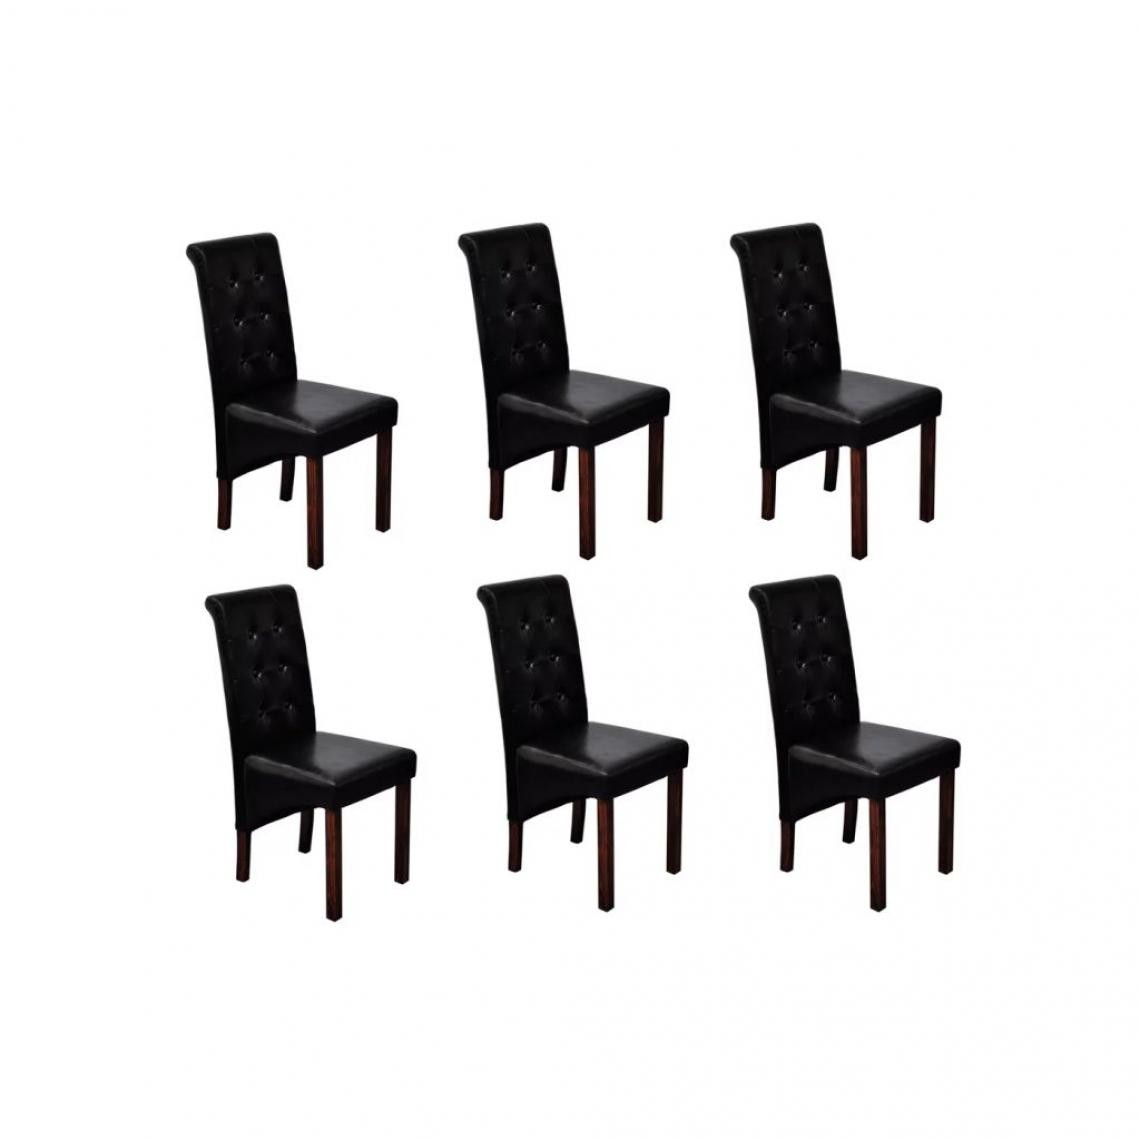 Decoshop26 - Lot de 6 chaises de salle à manger cuisine design antique similicuir noir CDS022680 - Chaises